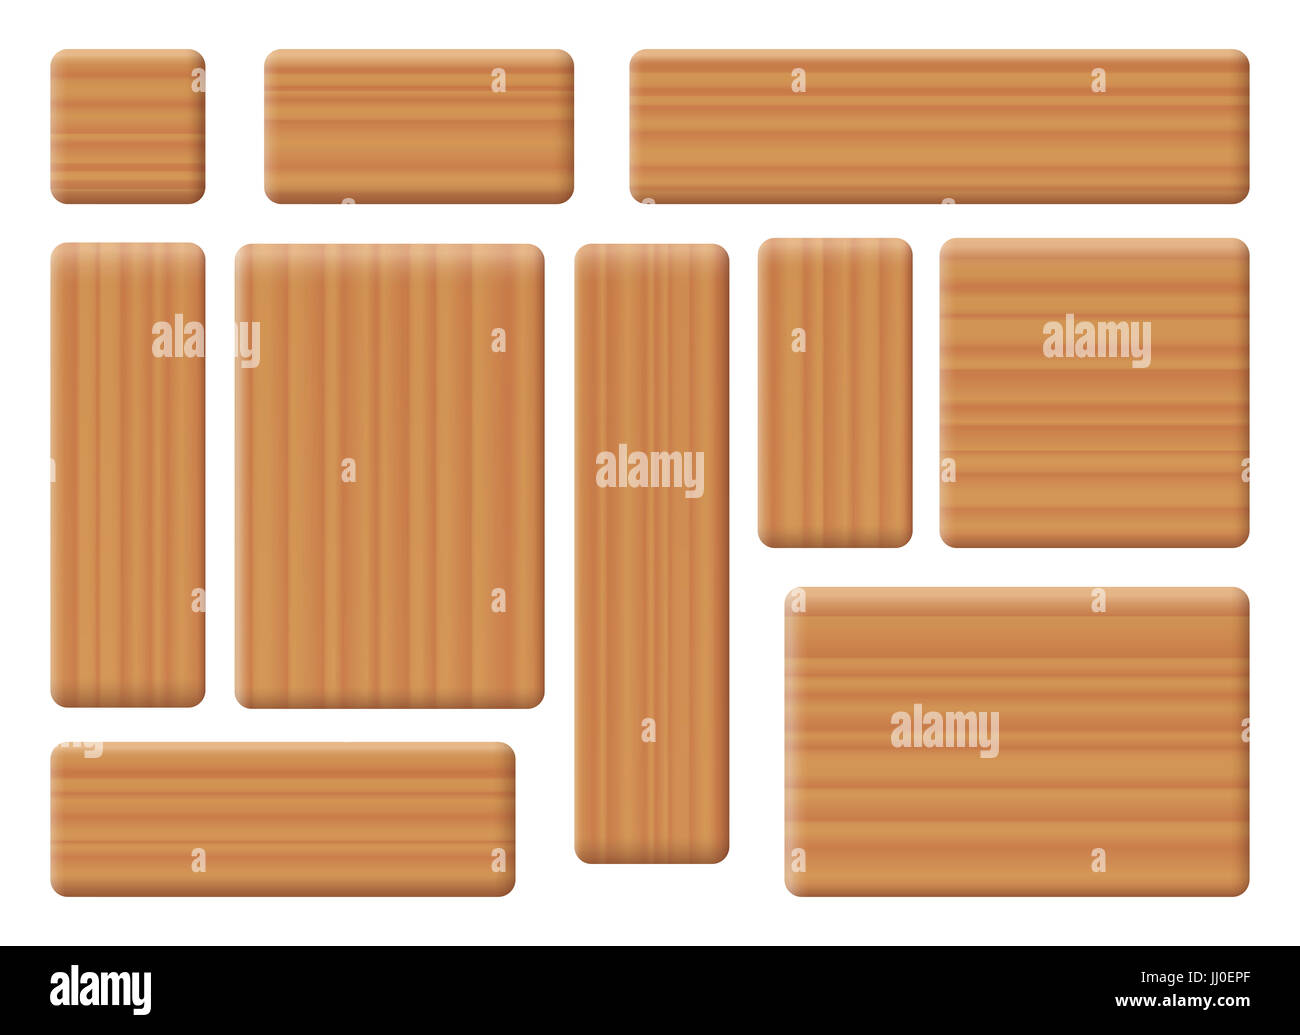 Costruzione in legno mattoni - blocchi giocattolo, varie forme in orizzontale e in verticale - dieci articoli con texture di legno per essere usato come giocattoli da costruzione. Foto Stock